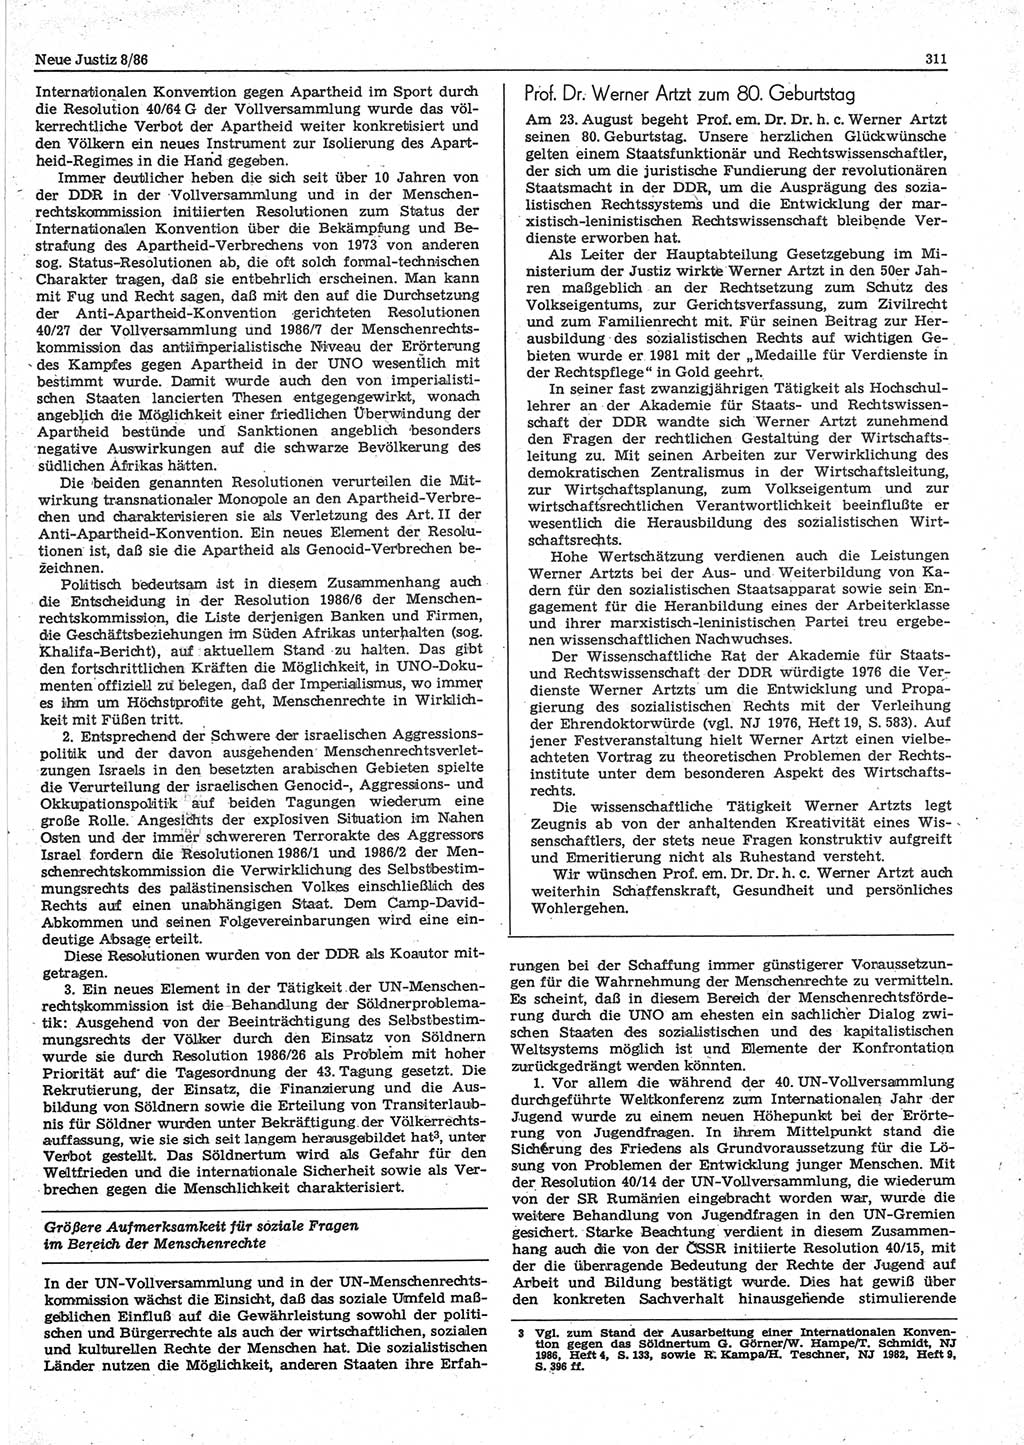 Neue Justiz (NJ), Zeitschrift für sozialistisches Recht und Gesetzlichkeit [Deutsche Demokratische Republik (DDR)], 40. Jahrgang 1986, Seite 311 (NJ DDR 1986, S. 311)